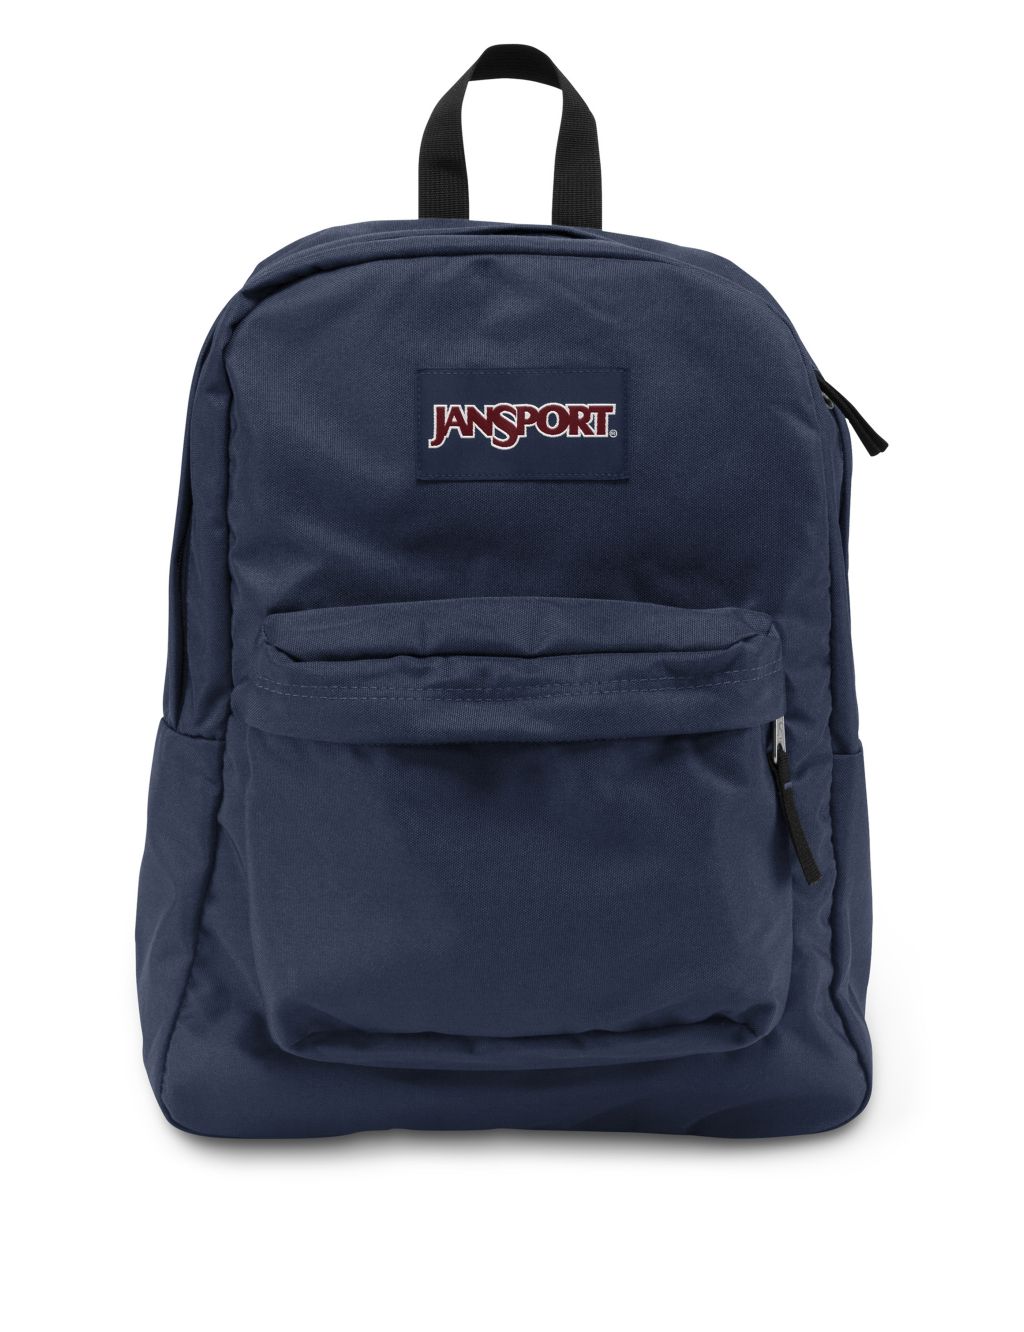 SuperBreak One Backpack image 1